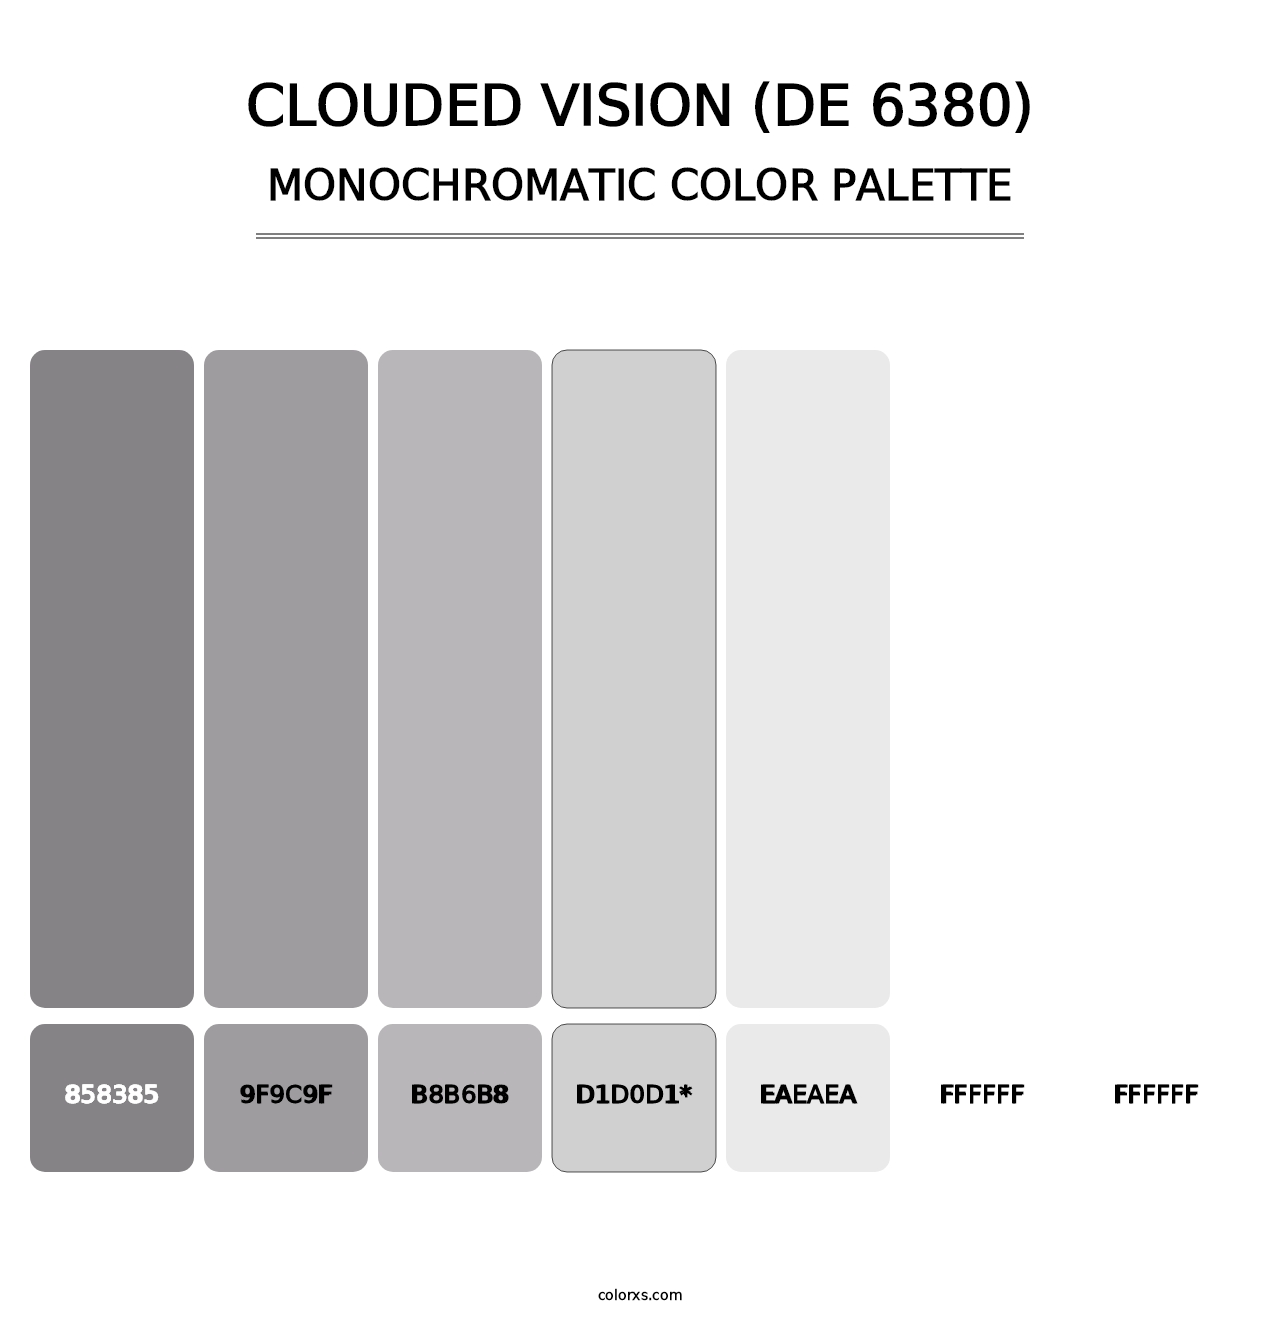 Clouded Vision (DE 6380) - Monochromatic Color Palette